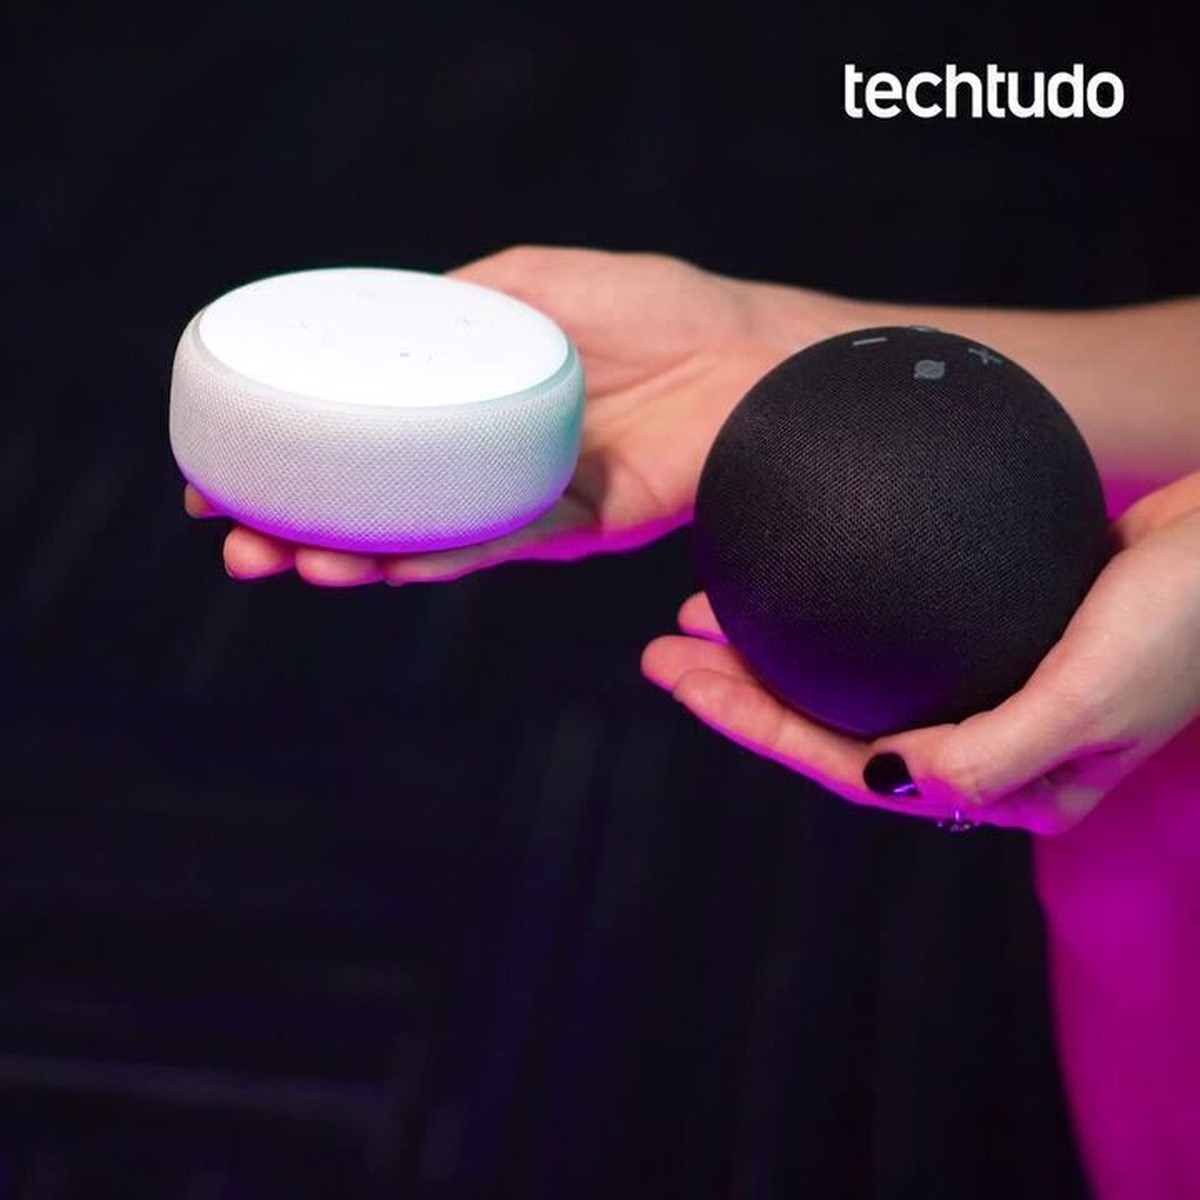 Echo Dot com relógio ou sem? Veja o que muda na caixa com Alexa